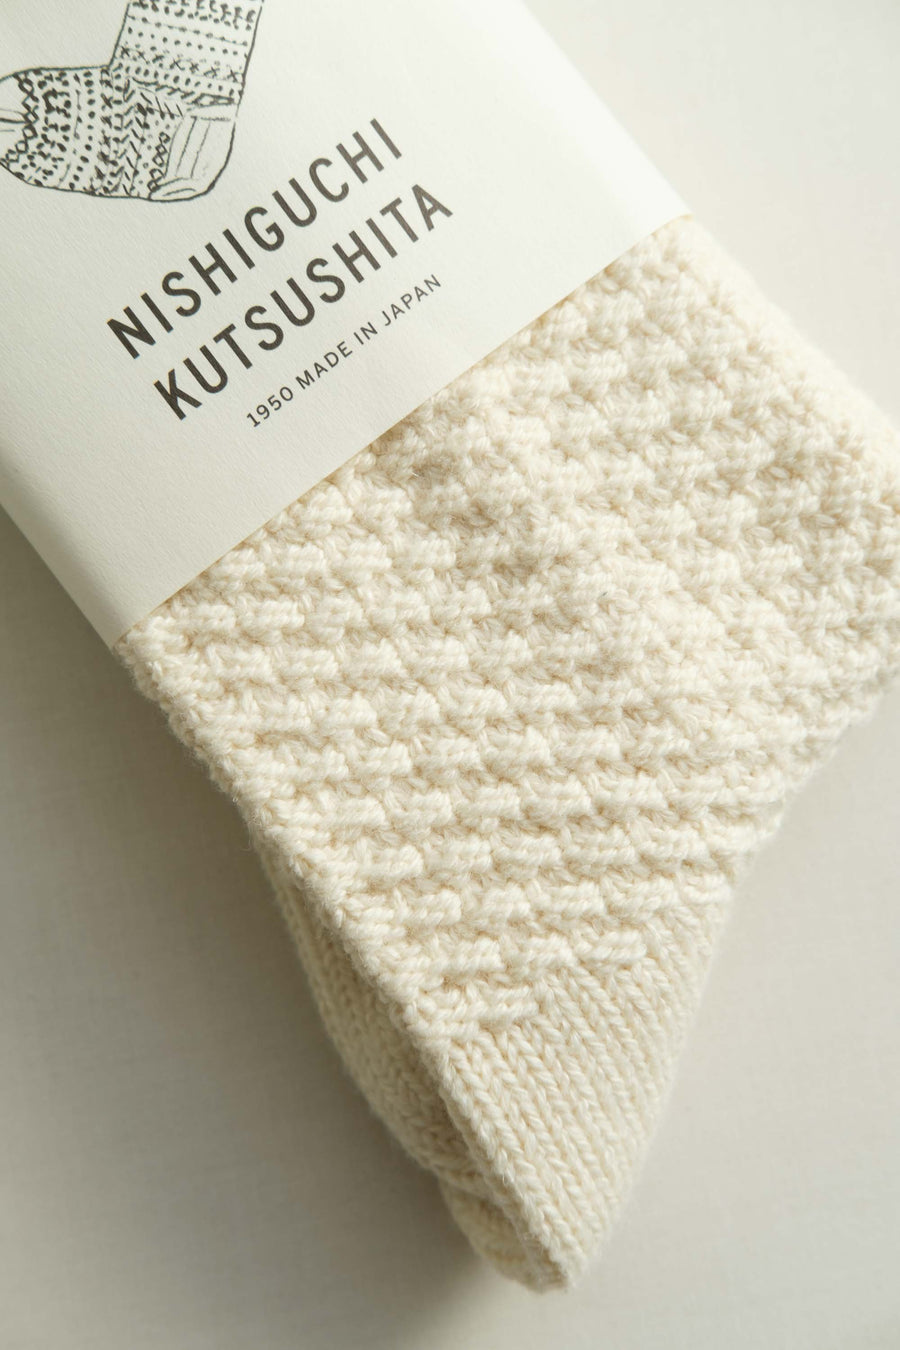 NISHIGUCHI KUTSUSHITA/ウールコットンブーツソックス Mサイズ